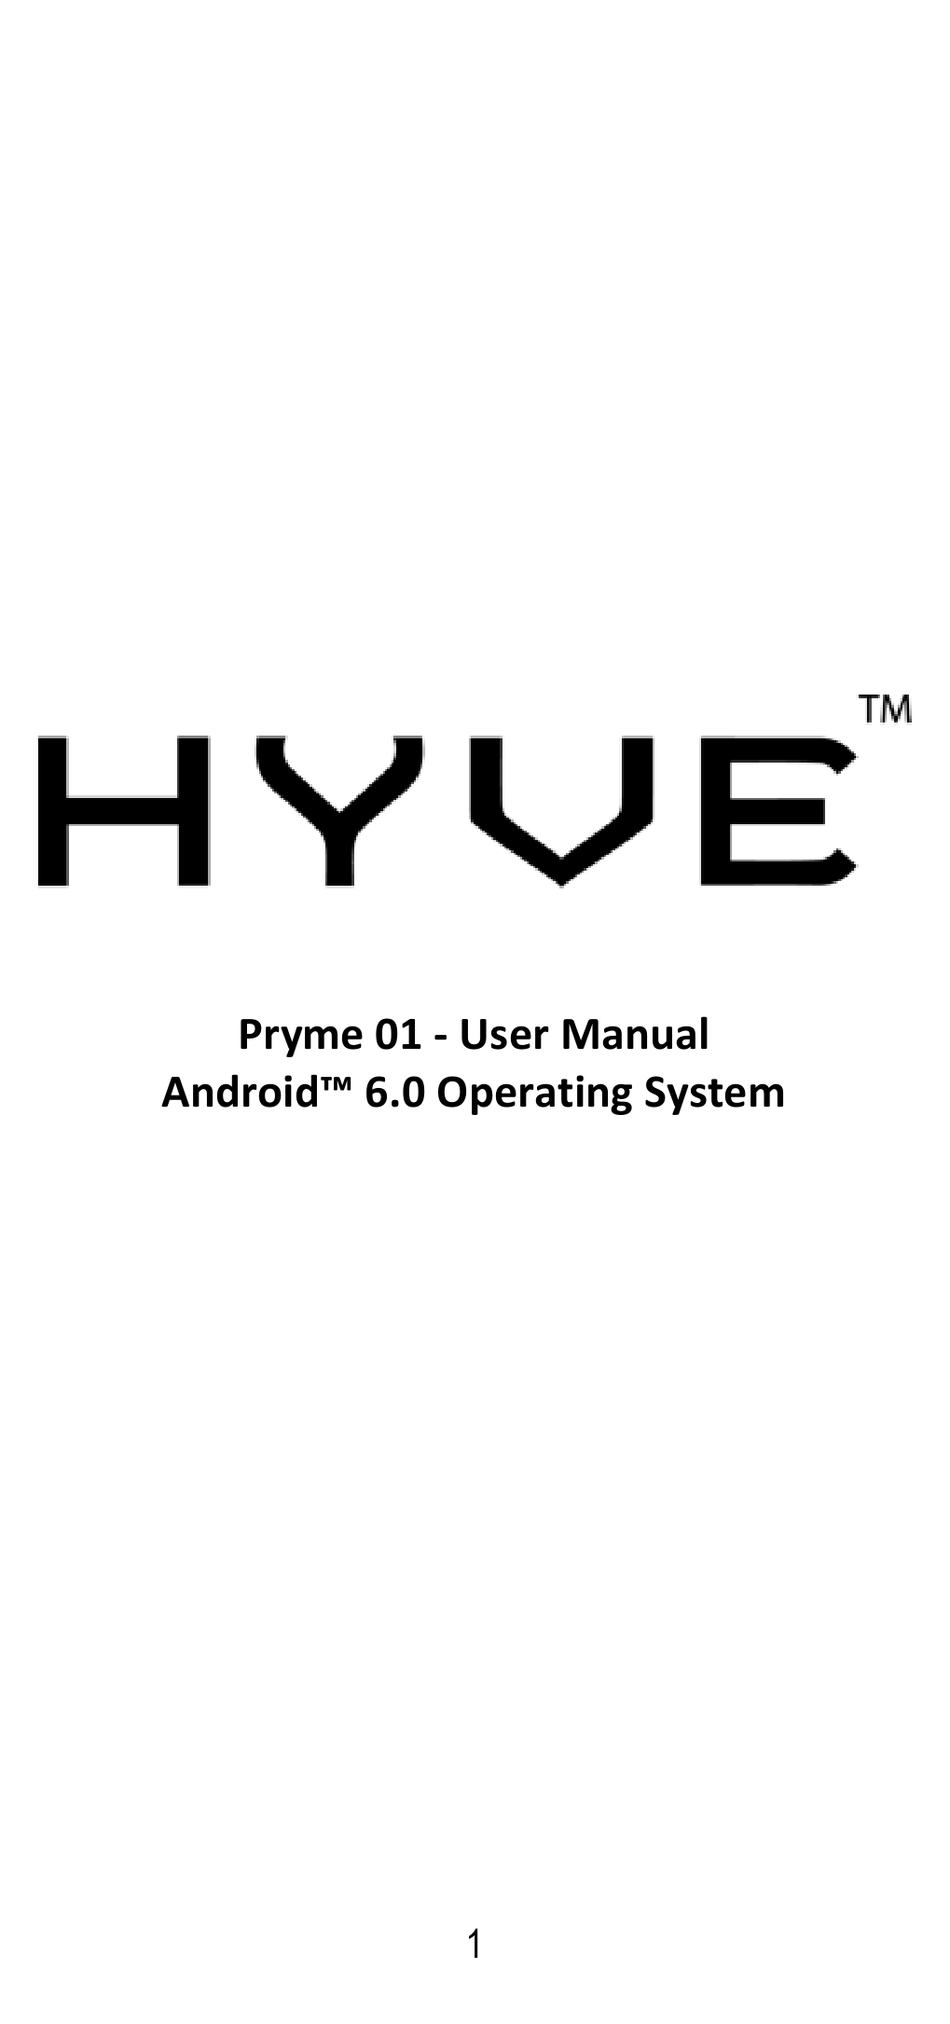 hyve-pryme-01-user-manual-pdf-download-manualslib